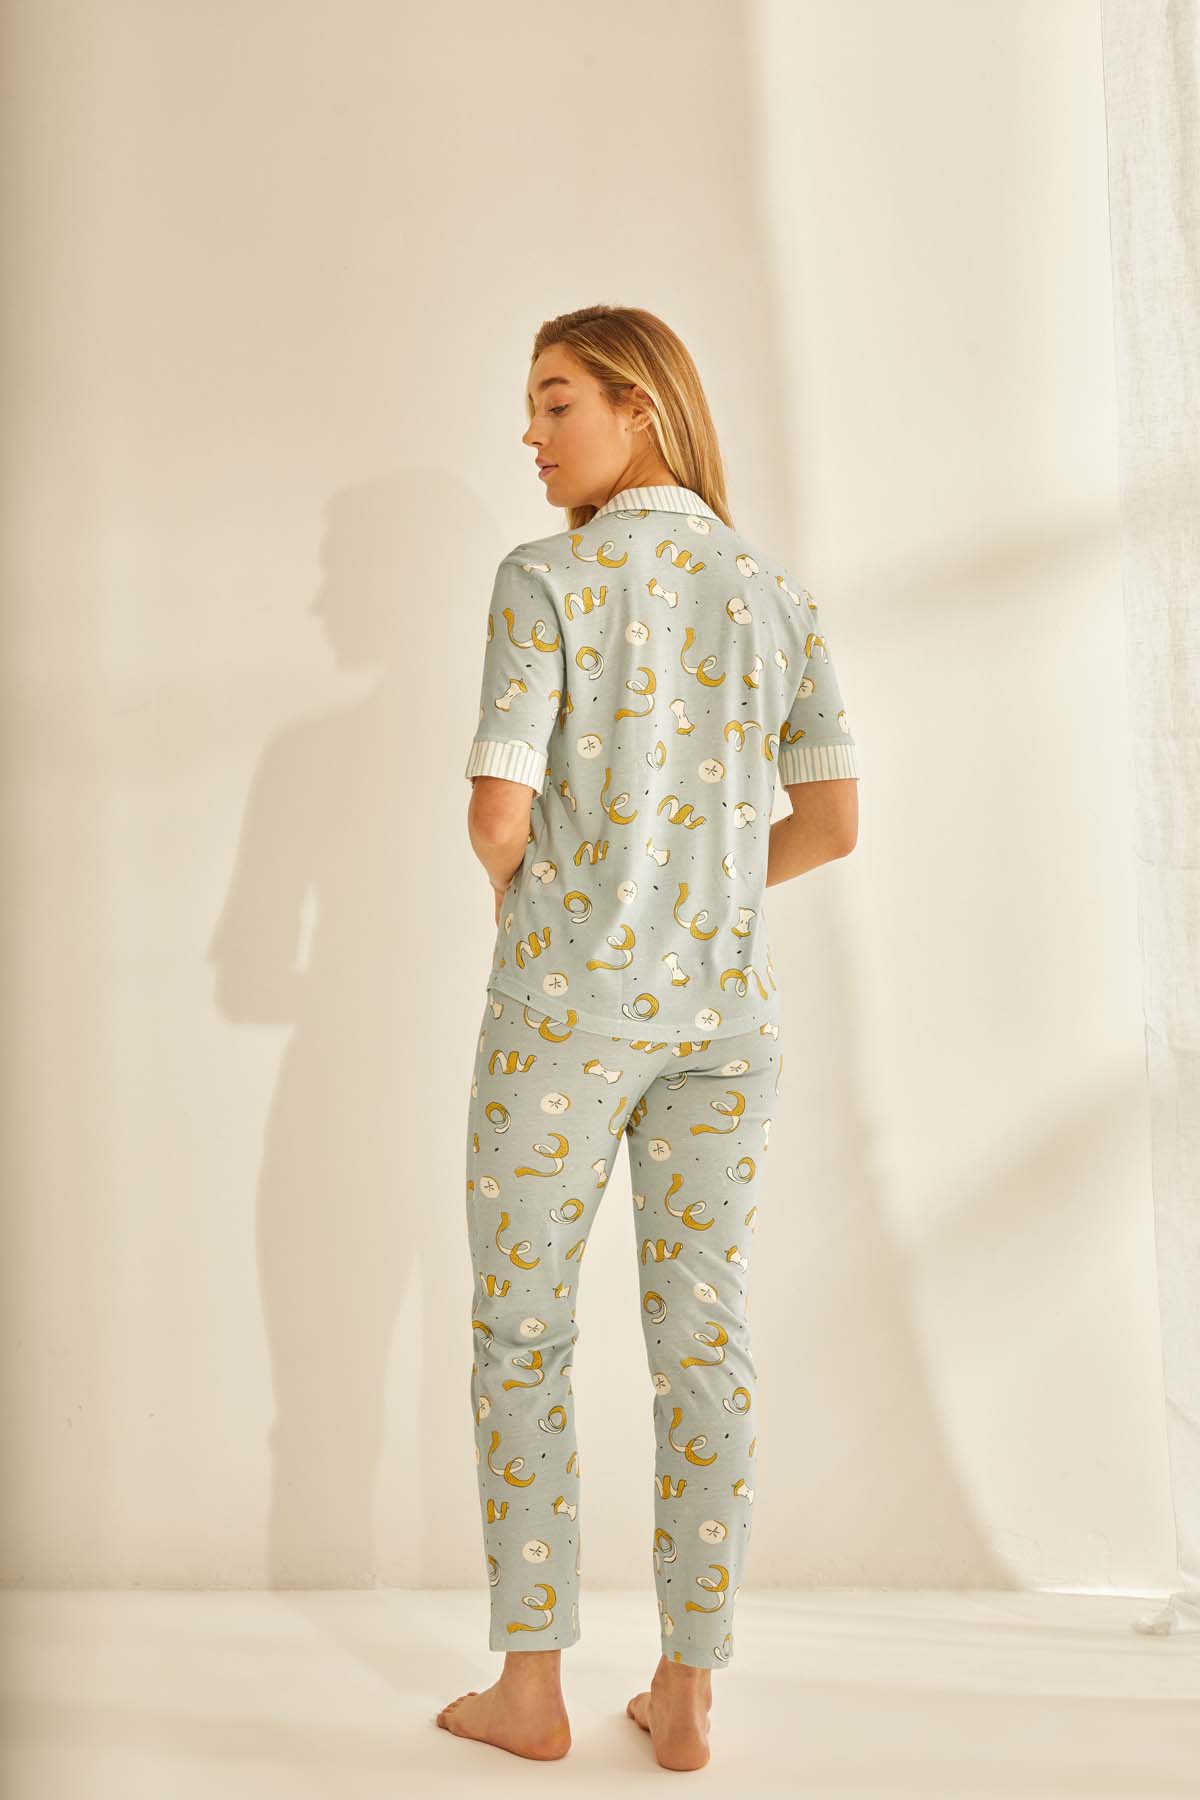 Kadın Modal Midi Pijama Altı